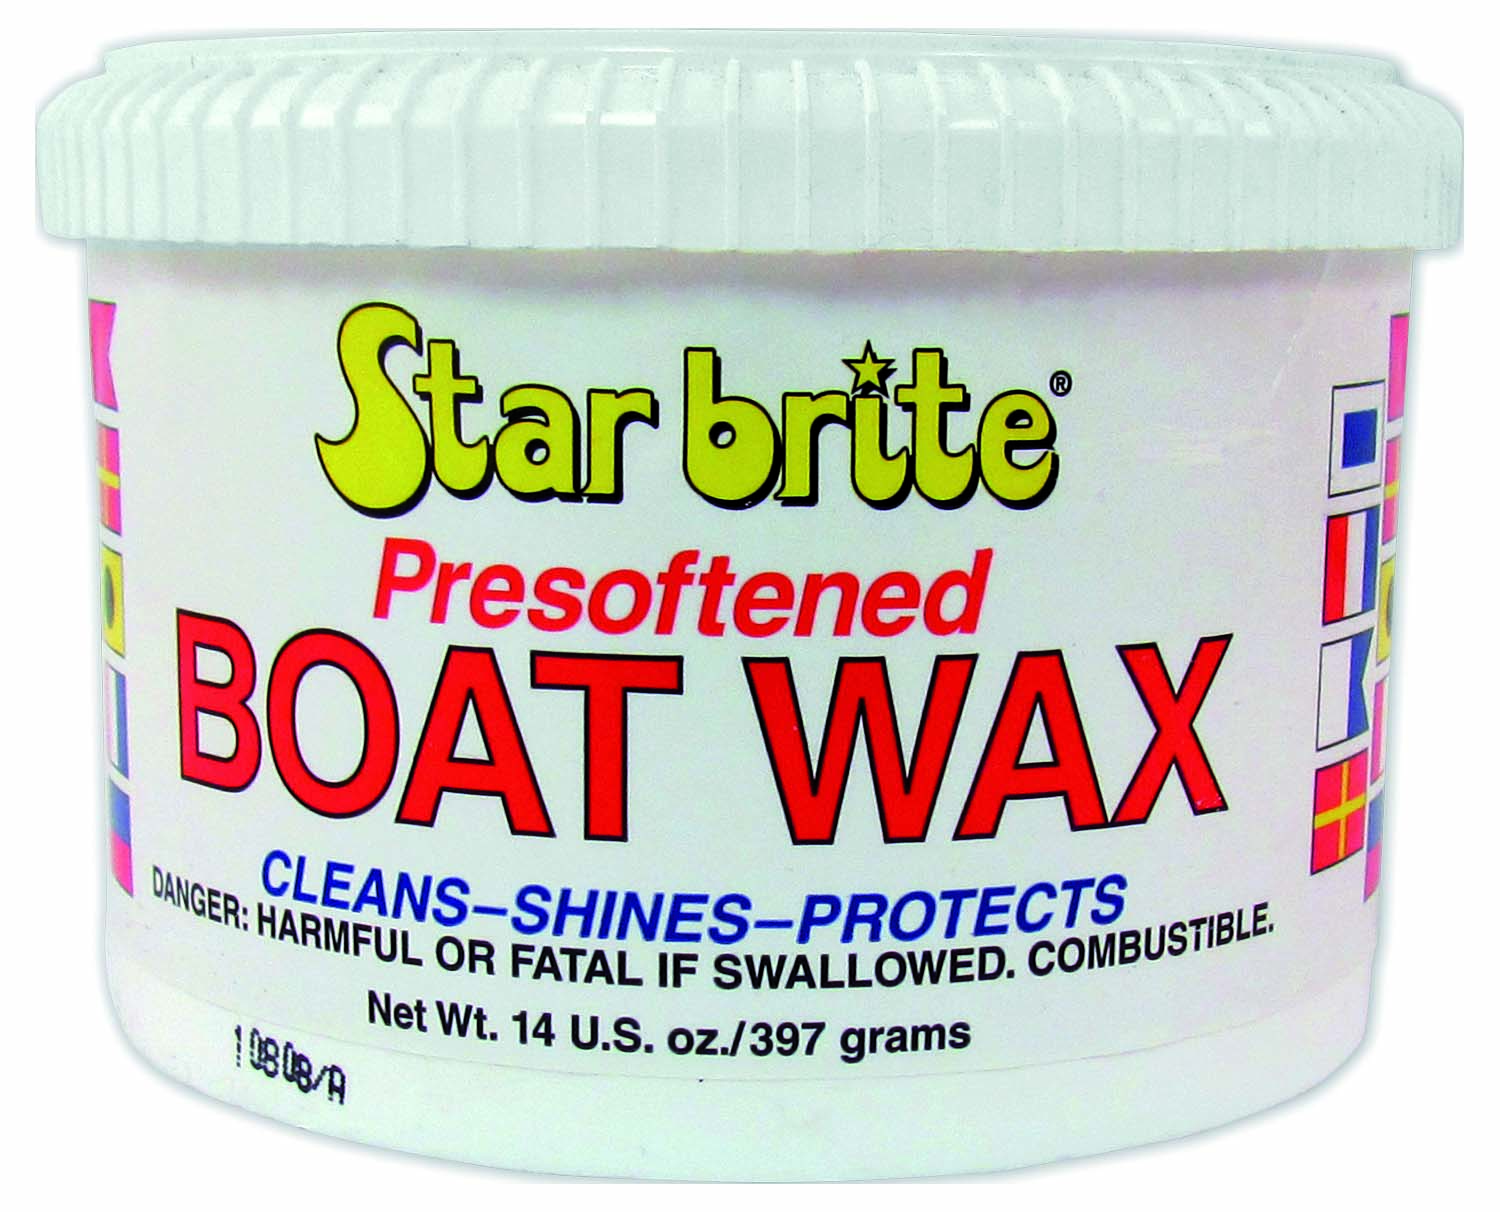 Star Brite Boat Wax